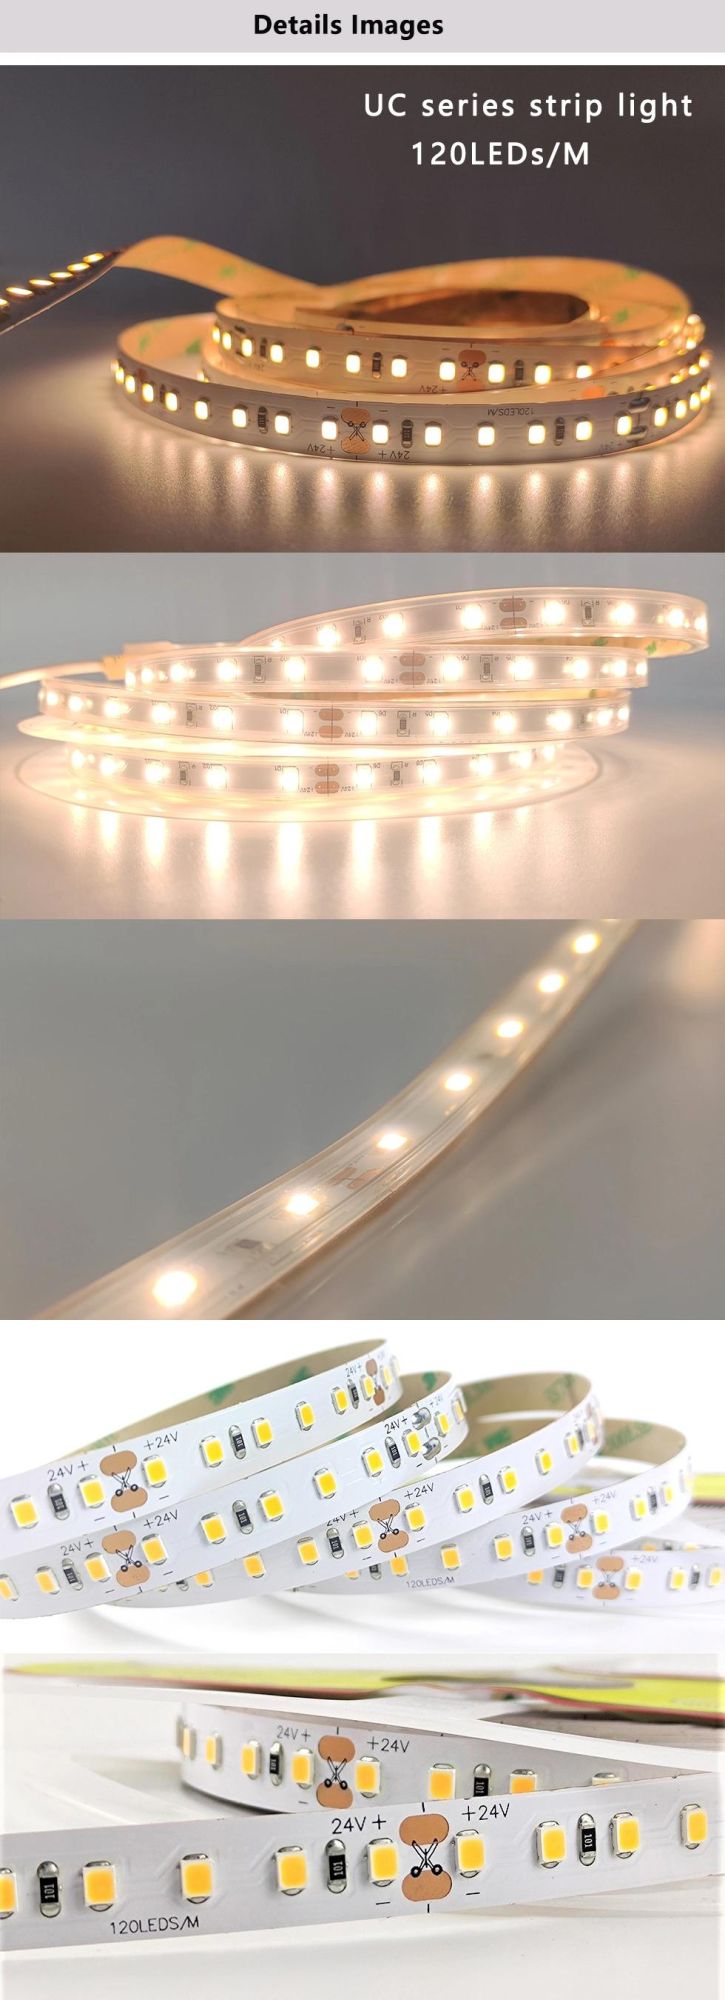 LED Linear Strip Light